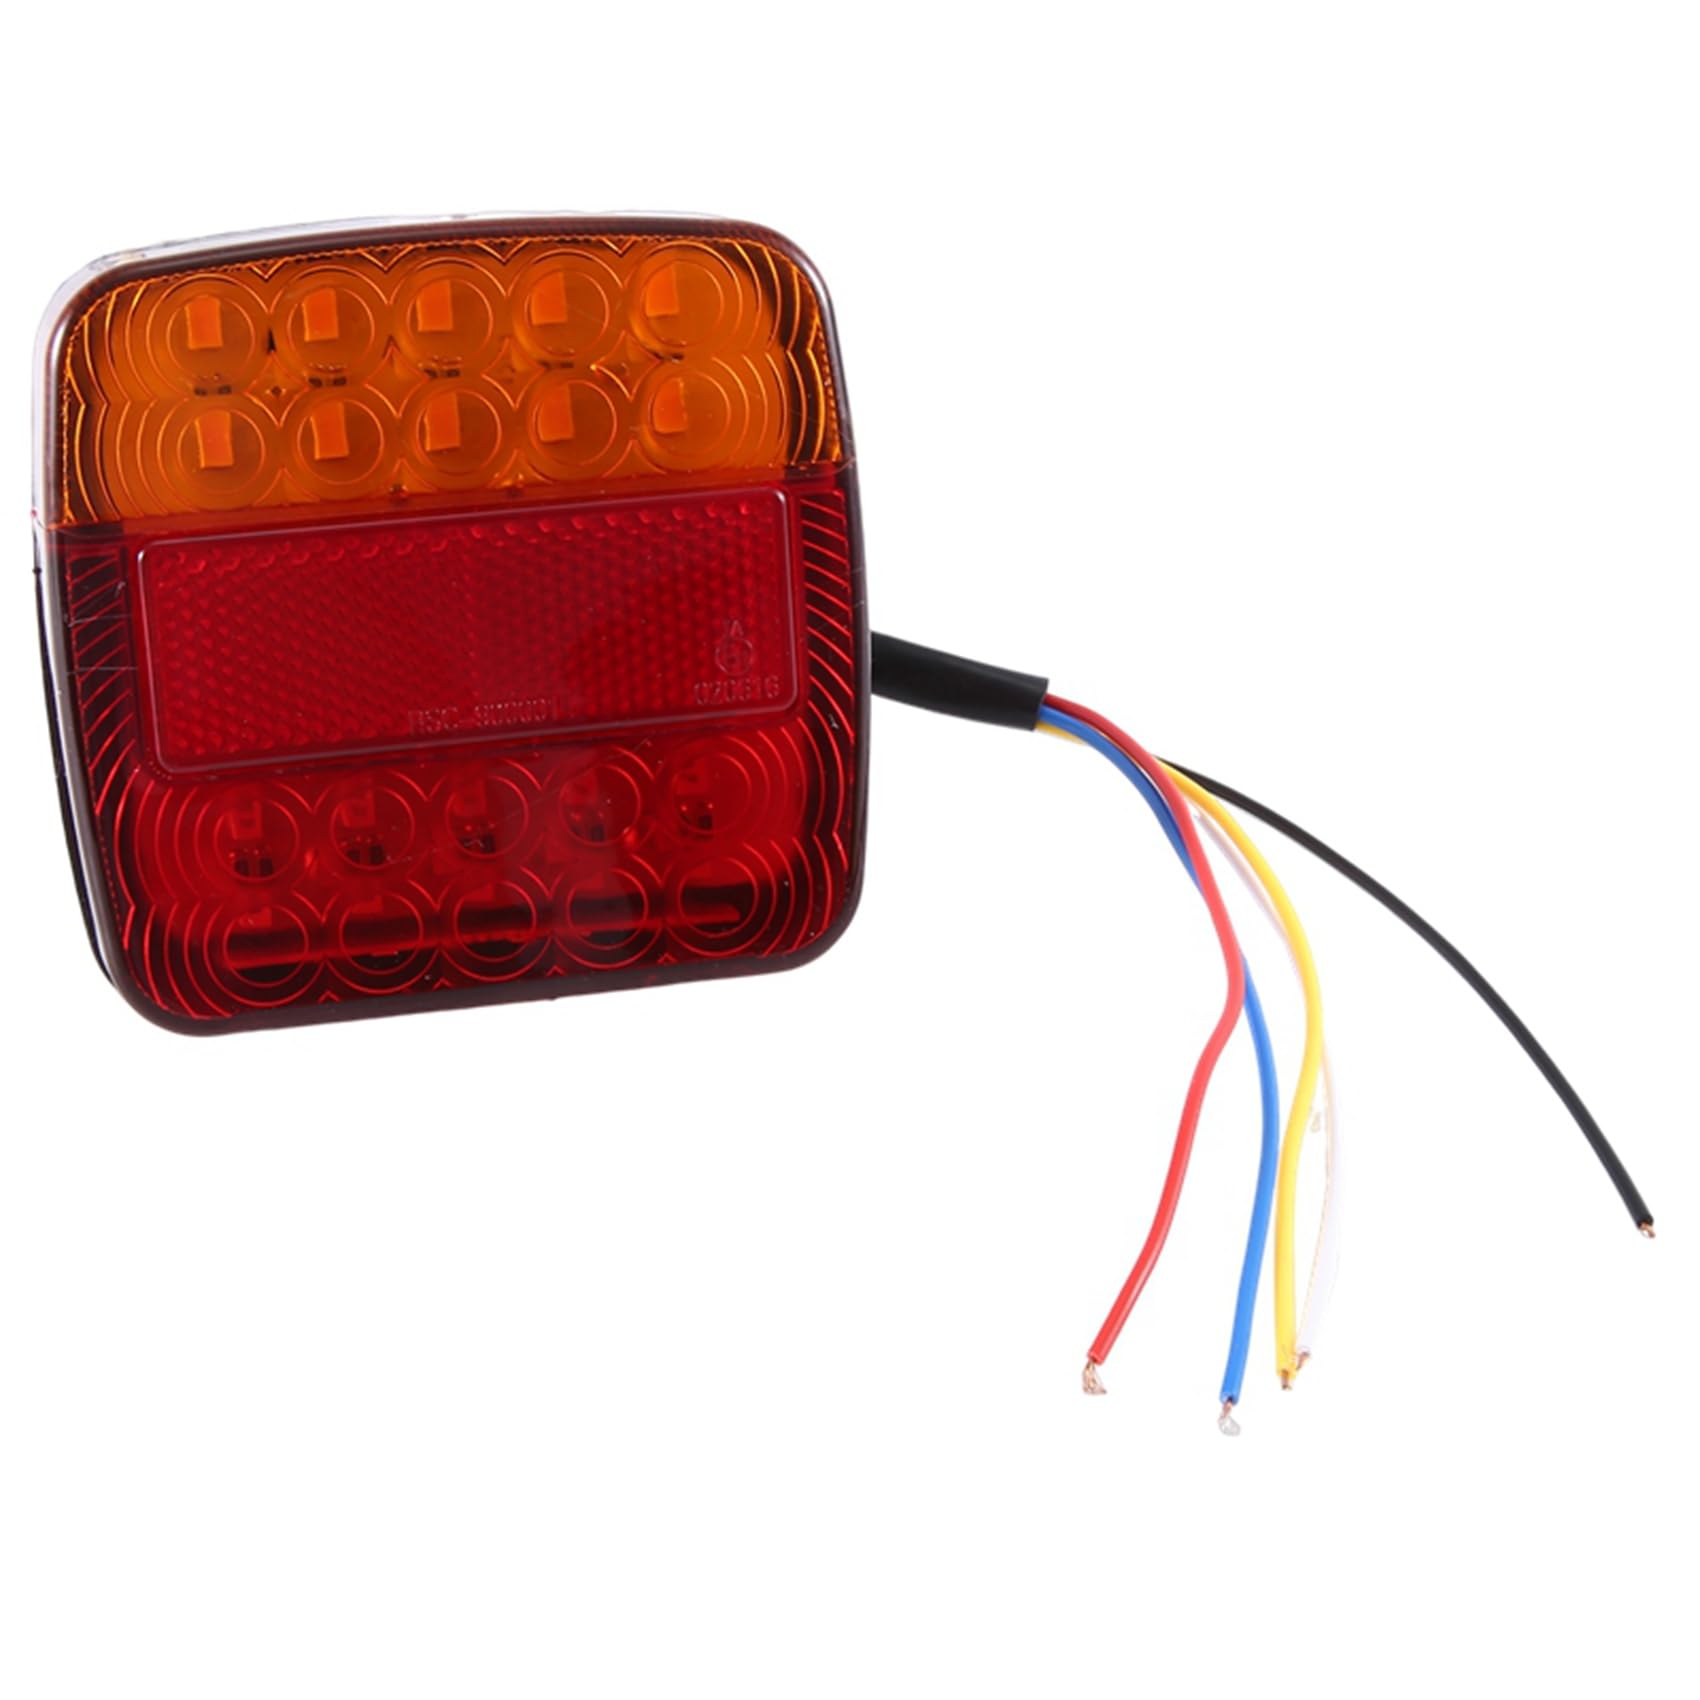 Knadgbft 12V LED Quadratische Lampe Zweifarbige Rückleuchte Universal Auto Liefert Ersatzteile Rote Abdeckung von Knadgbft